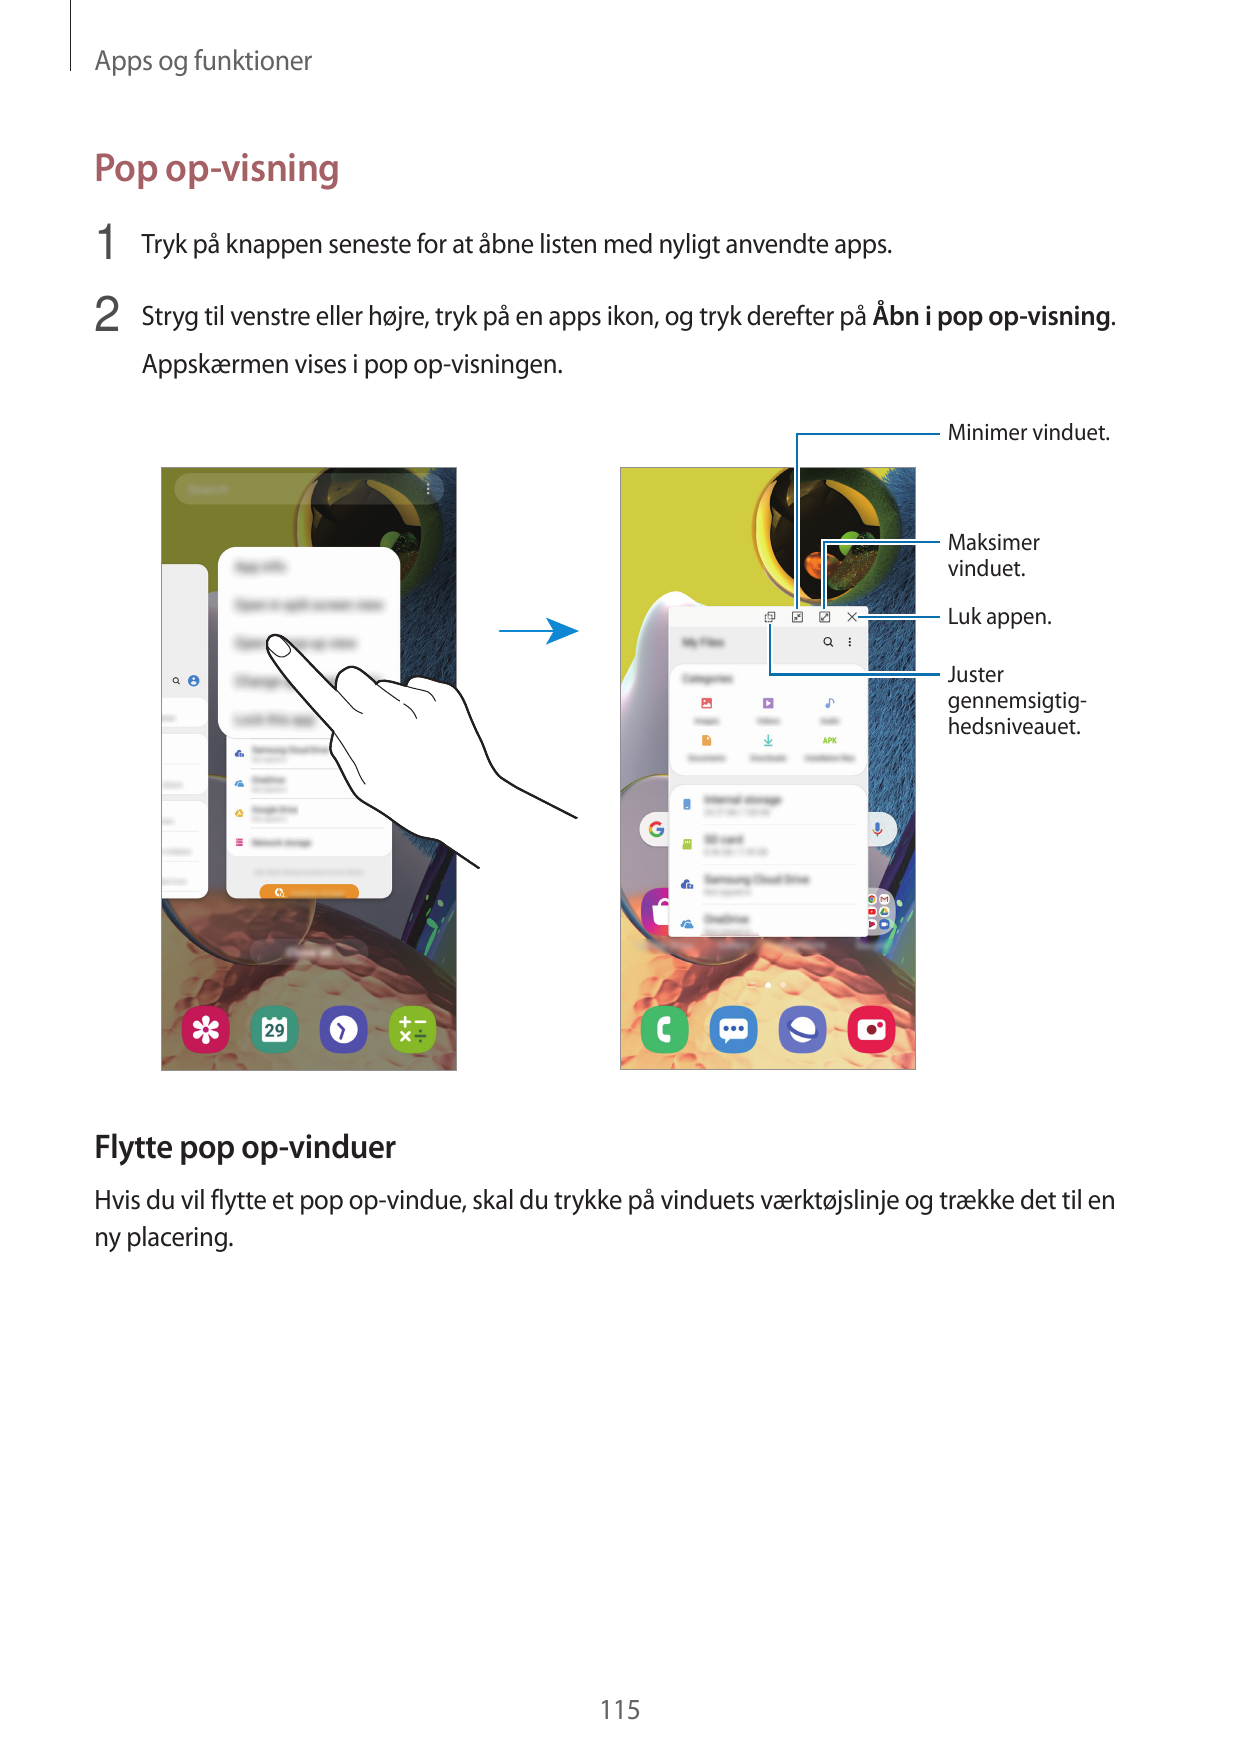 Apps og funktionerPop op-visning1 Tryk på knappen seneste for at åbne listen med nyligt anvendte apps.2 Stryg til venstre eller 